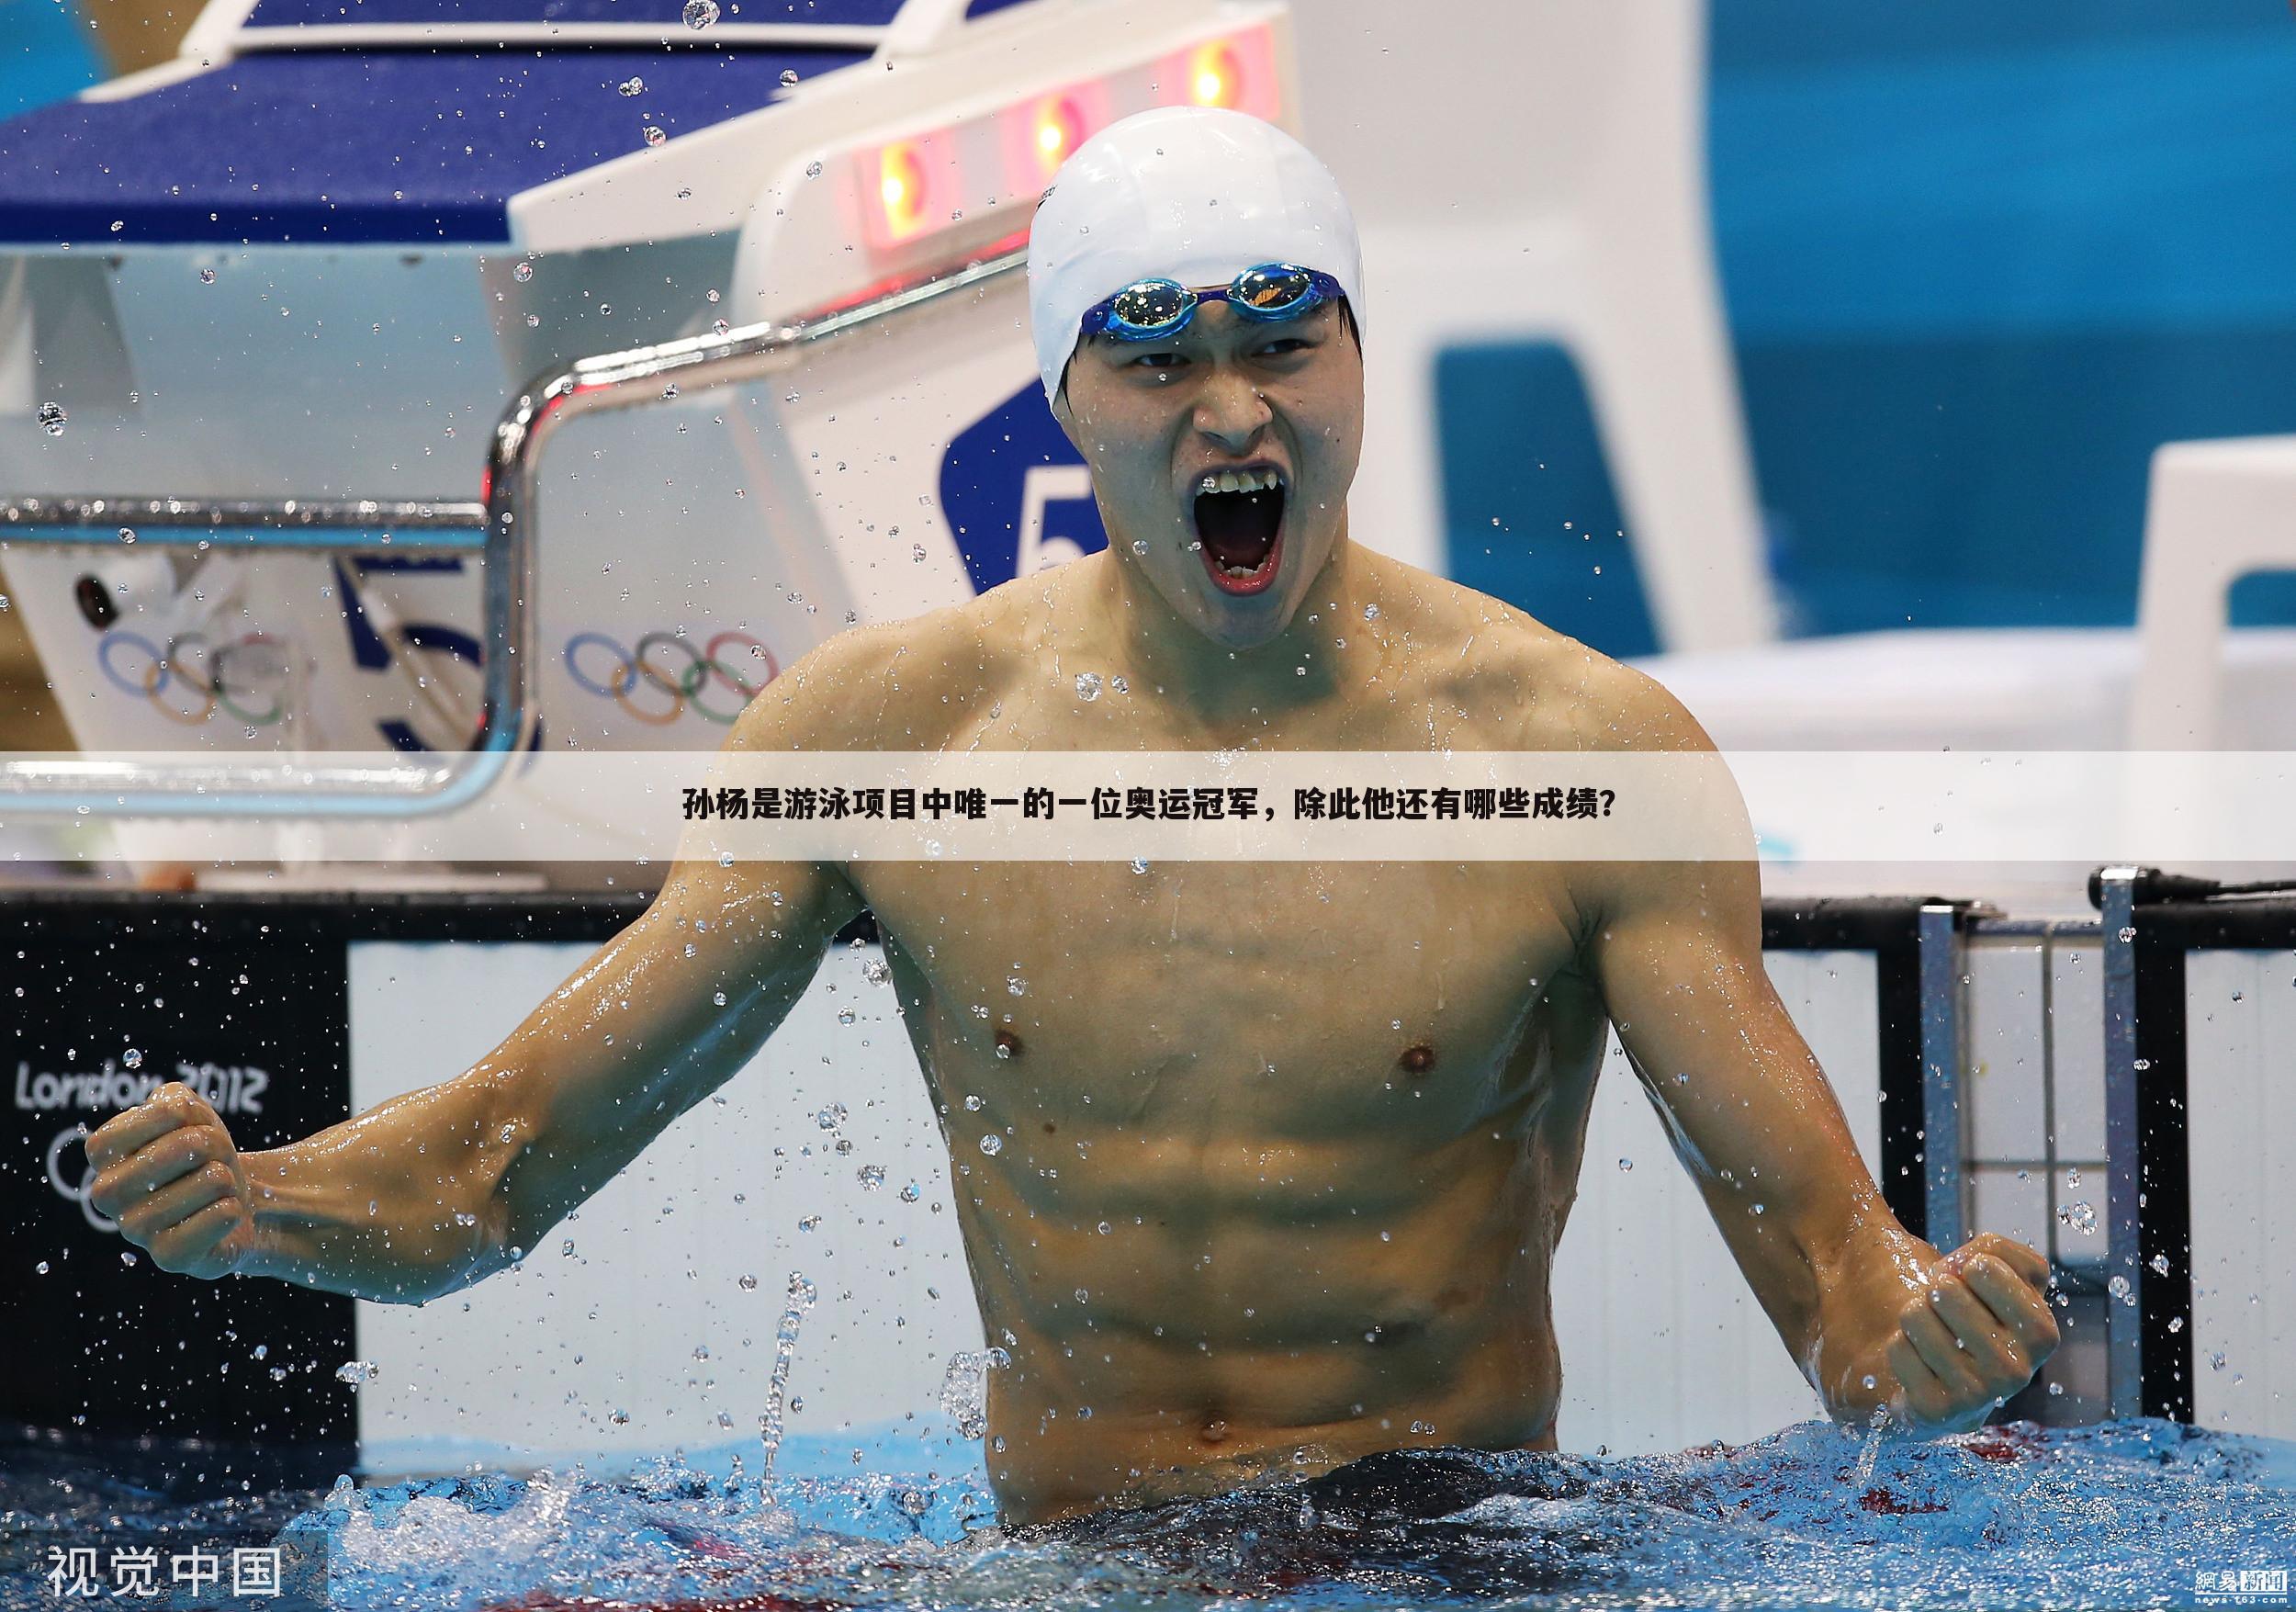 孙杨是游泳项目中唯一的一位奥运冠军，除此他还有哪些成绩？